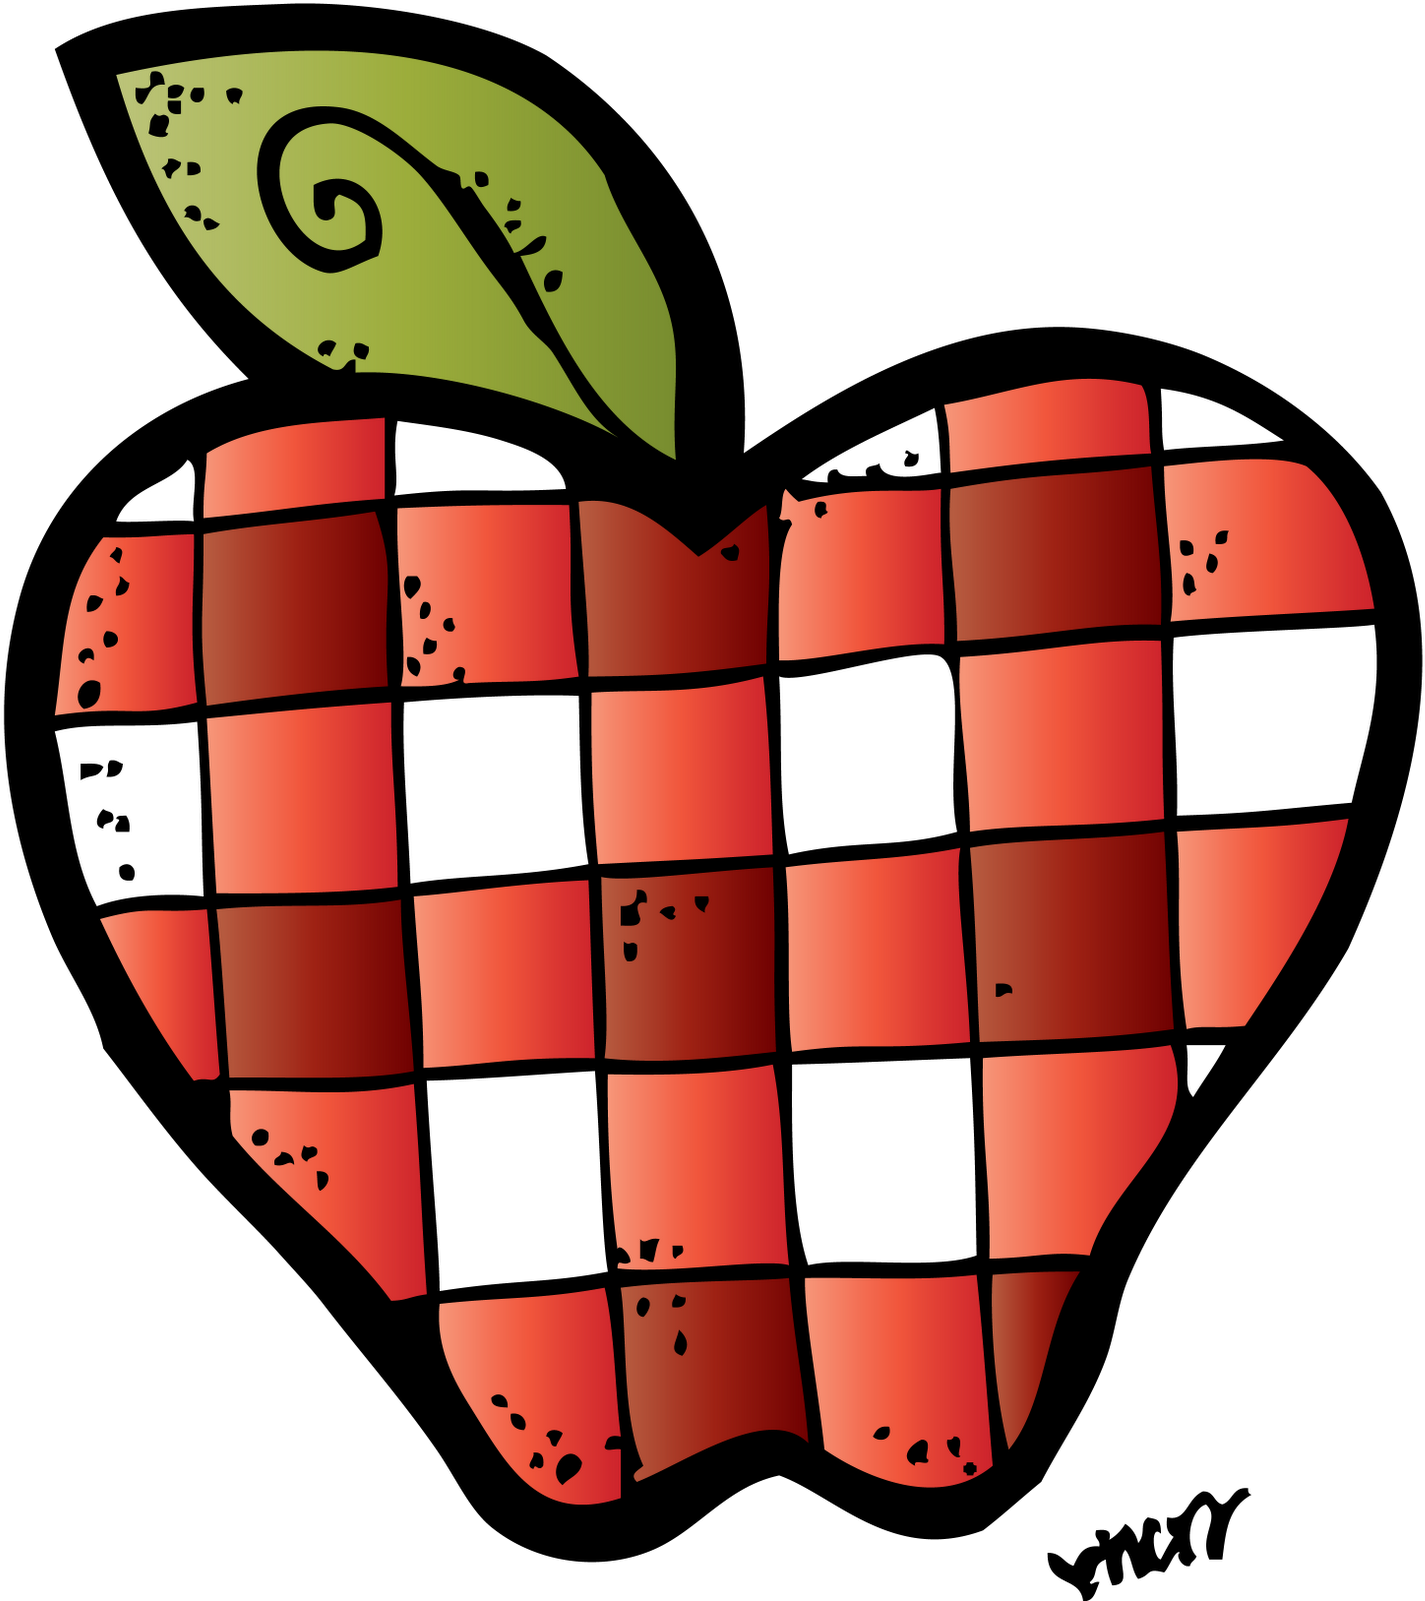 Melon Headz - Melonheadz Apple (1476x1600)